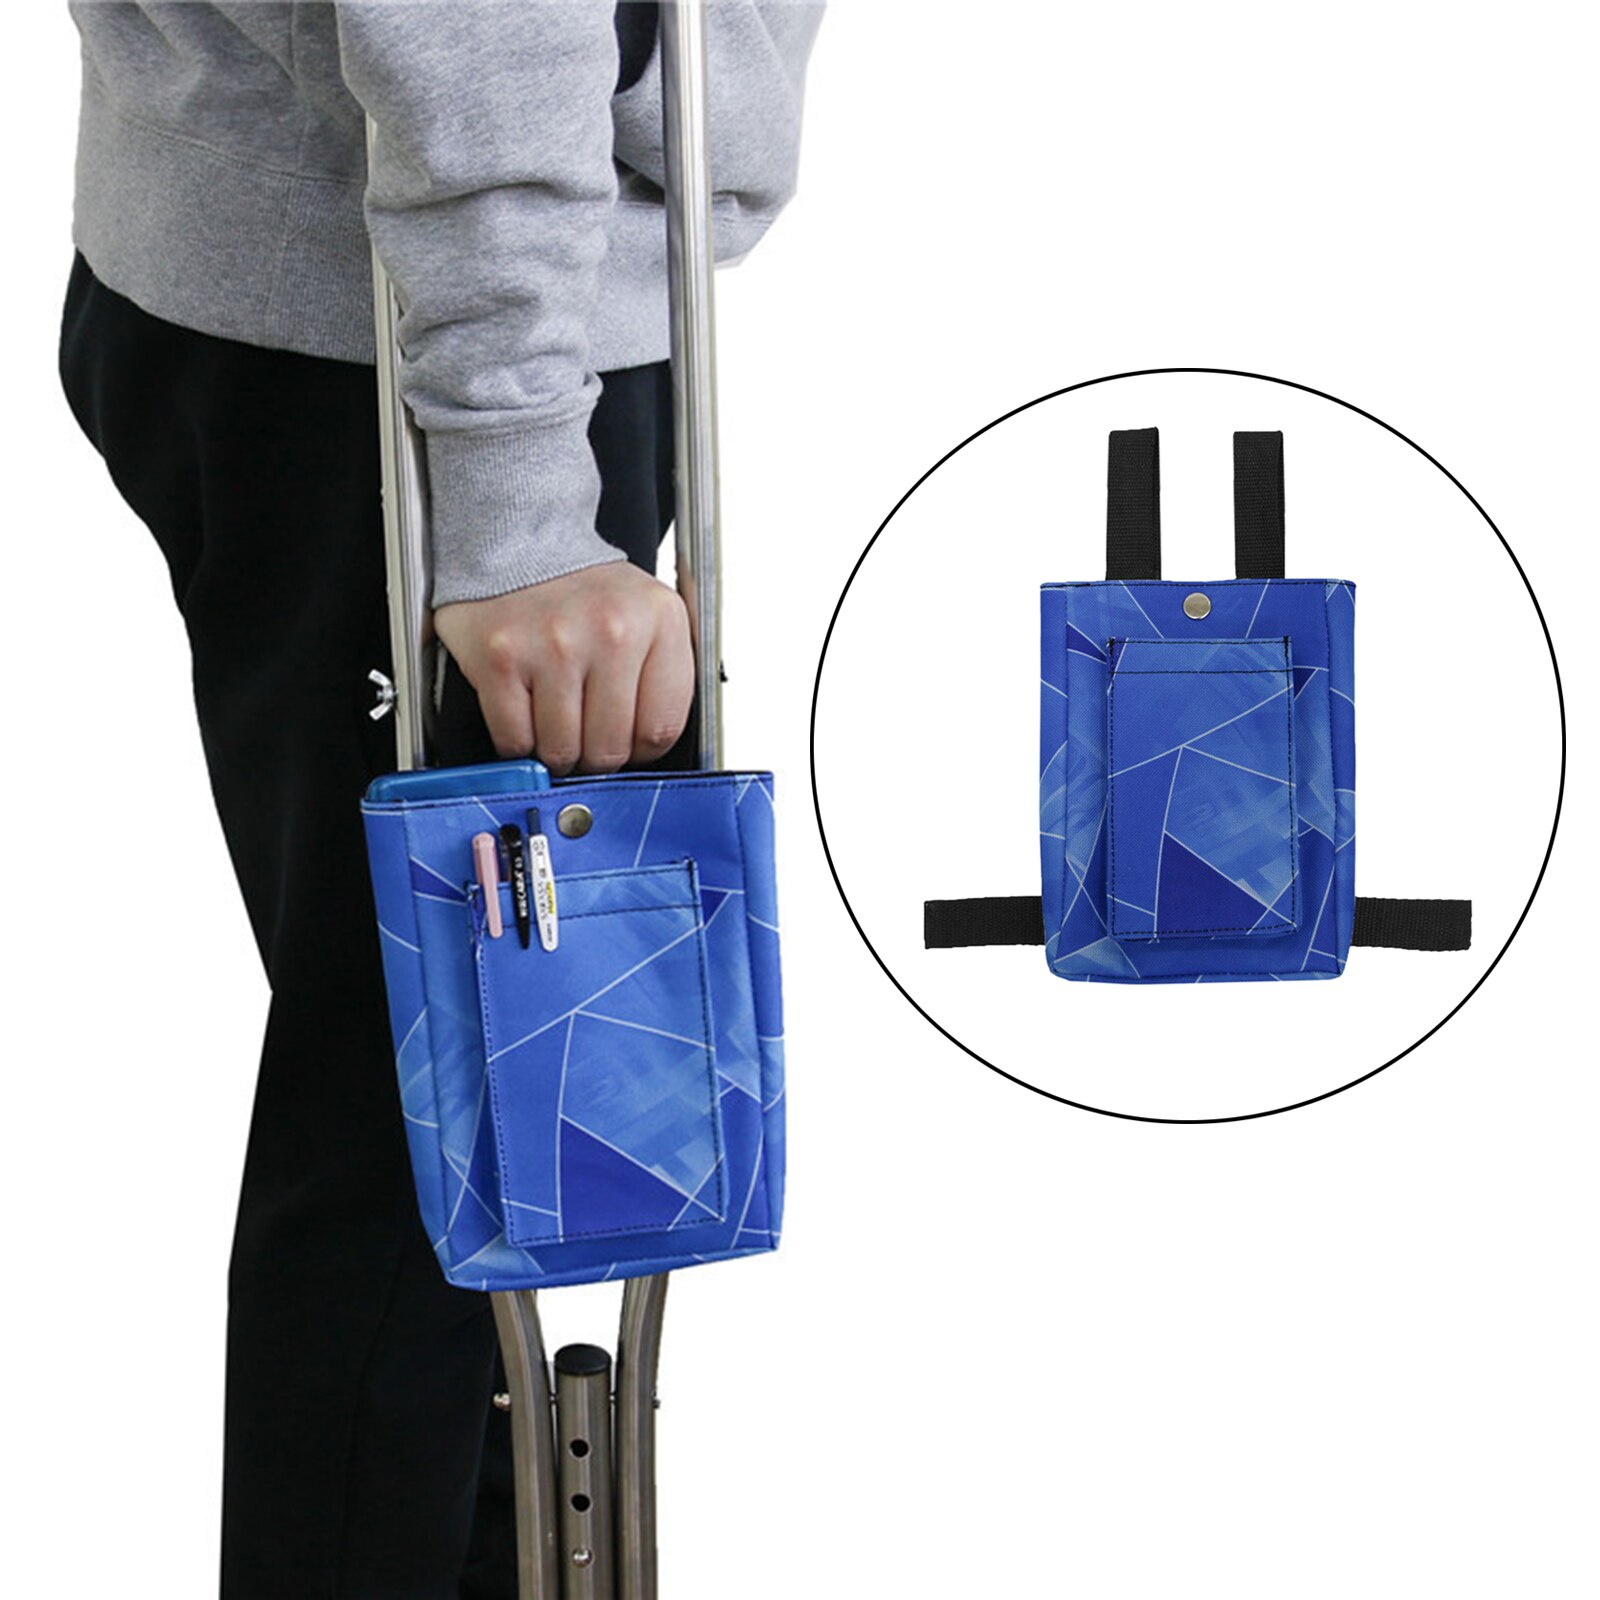 Kruk Bag Pouch Voor Krukken-Universele Accessoires Voor Mannen, Vrouwen En Kinderen-Lichtgewicht Carry Op Opbergvakken